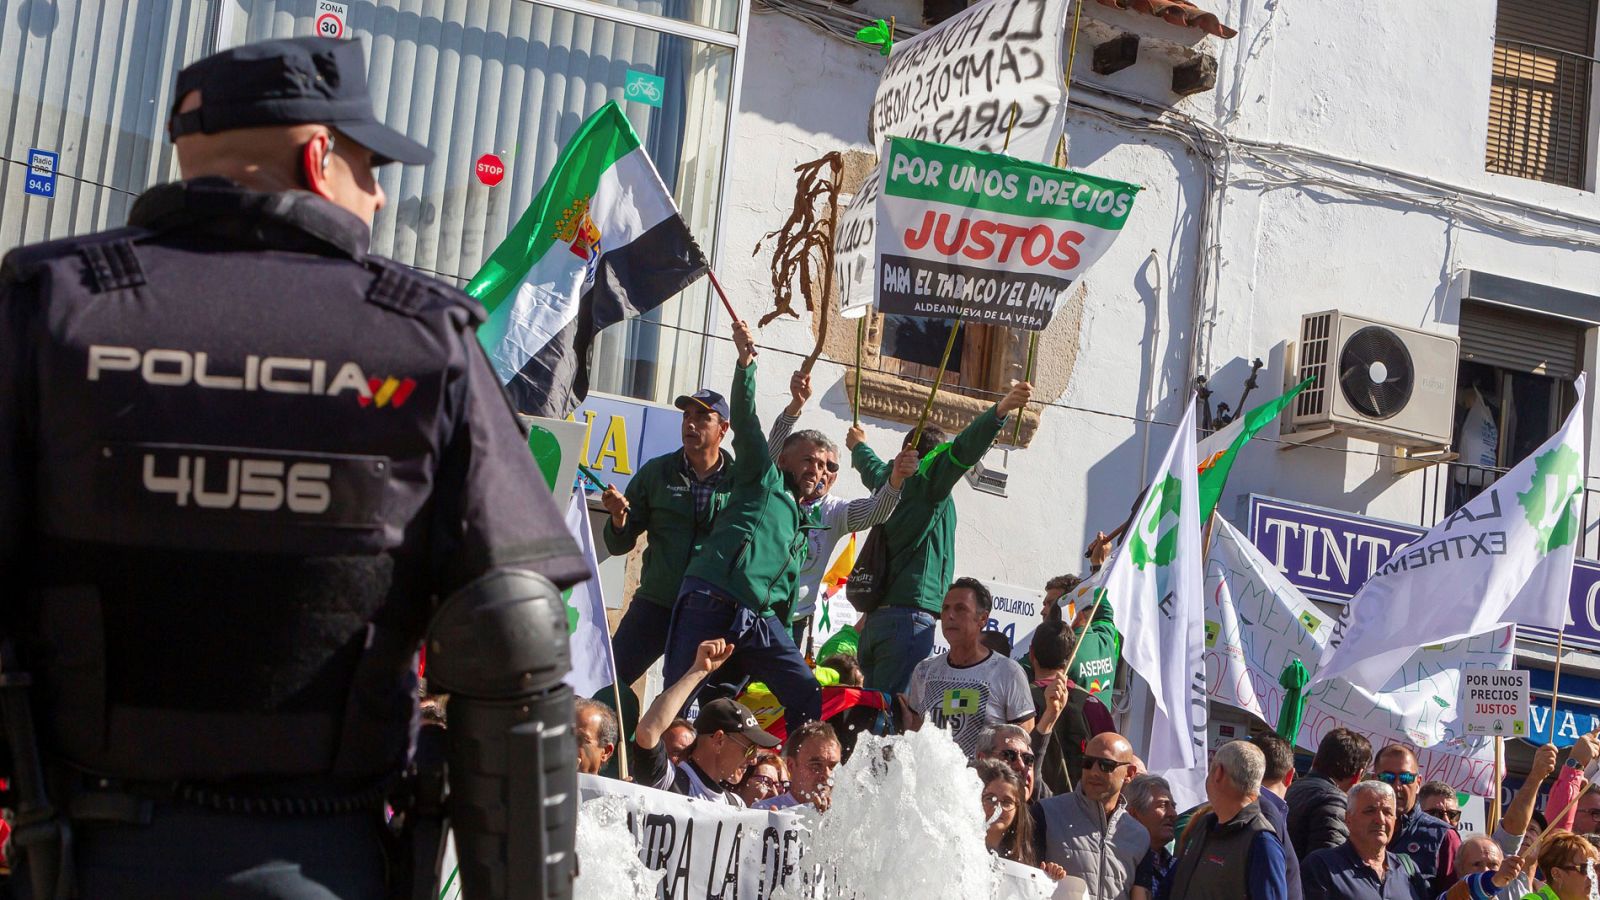 La protesta de agricultores en Mérida acaba con intervención policial